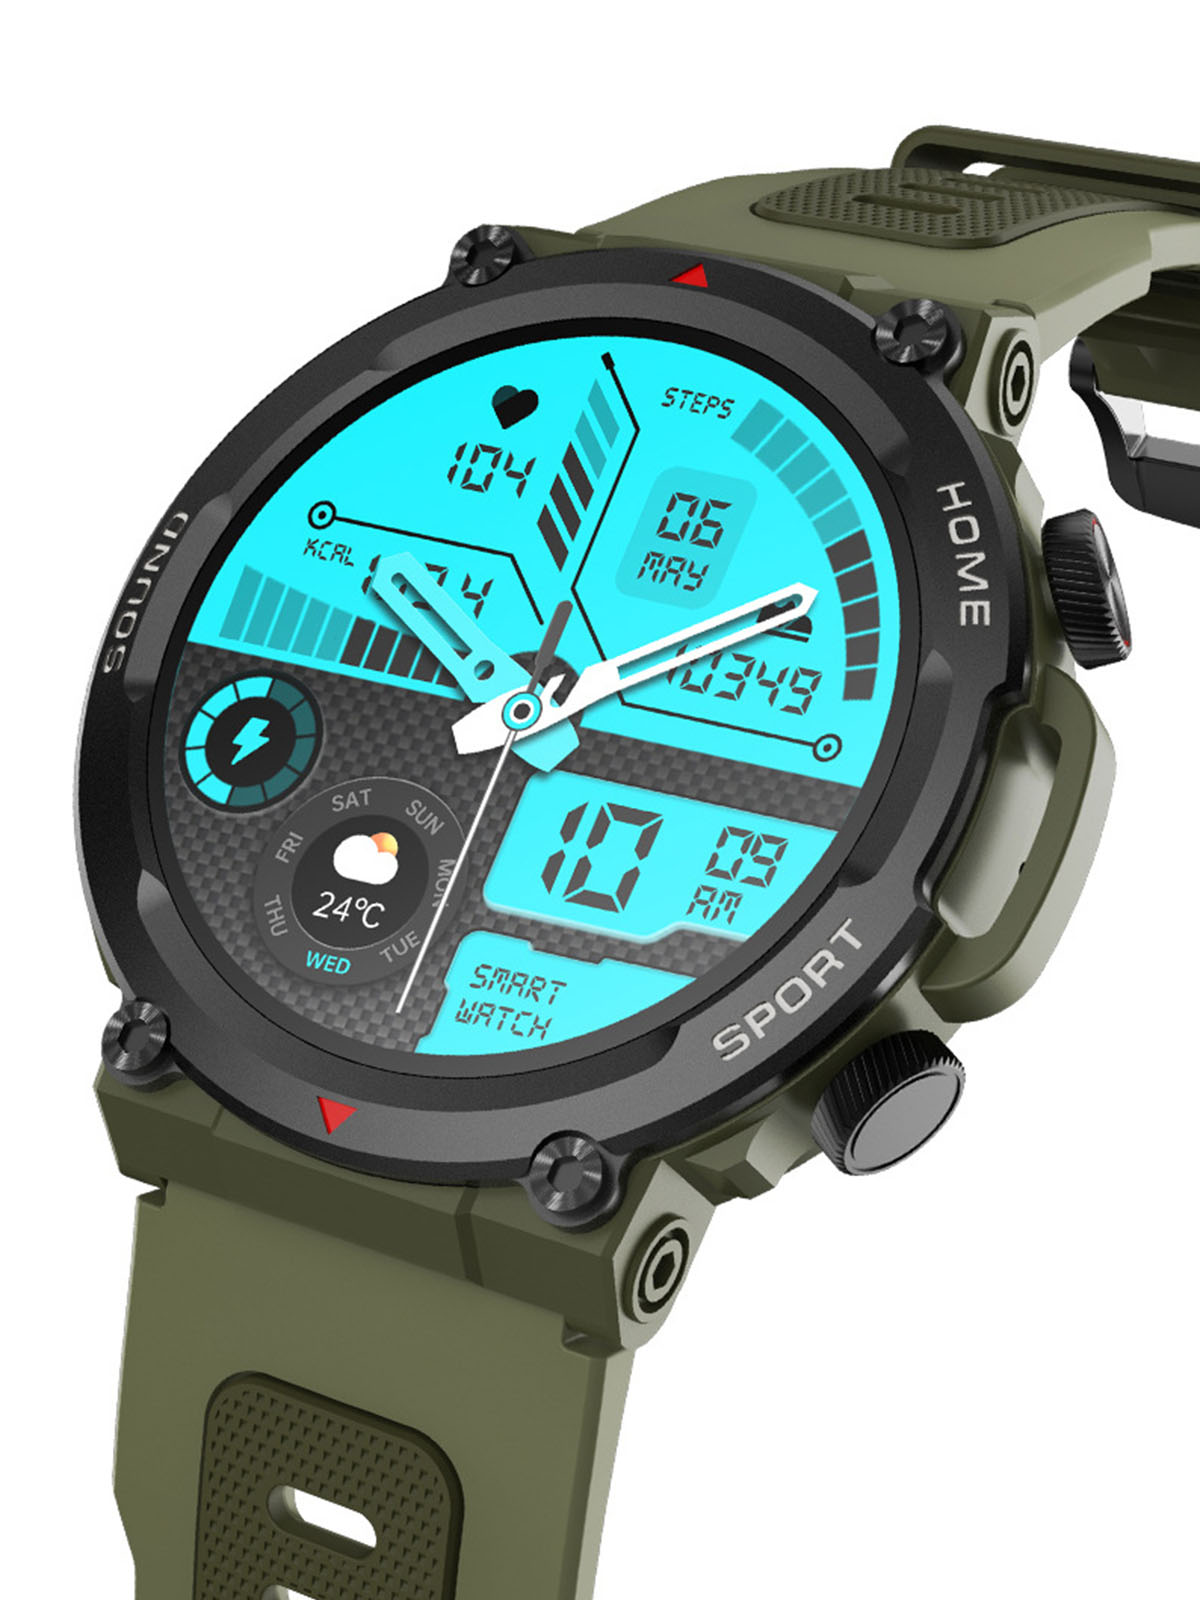 BRIGHTAKE Smart Bluetooth Talking Watch Smart & Erinnerungen Kieselerde, - weiß Smartwatch Multisport Blutdruck, Herzfrequenz